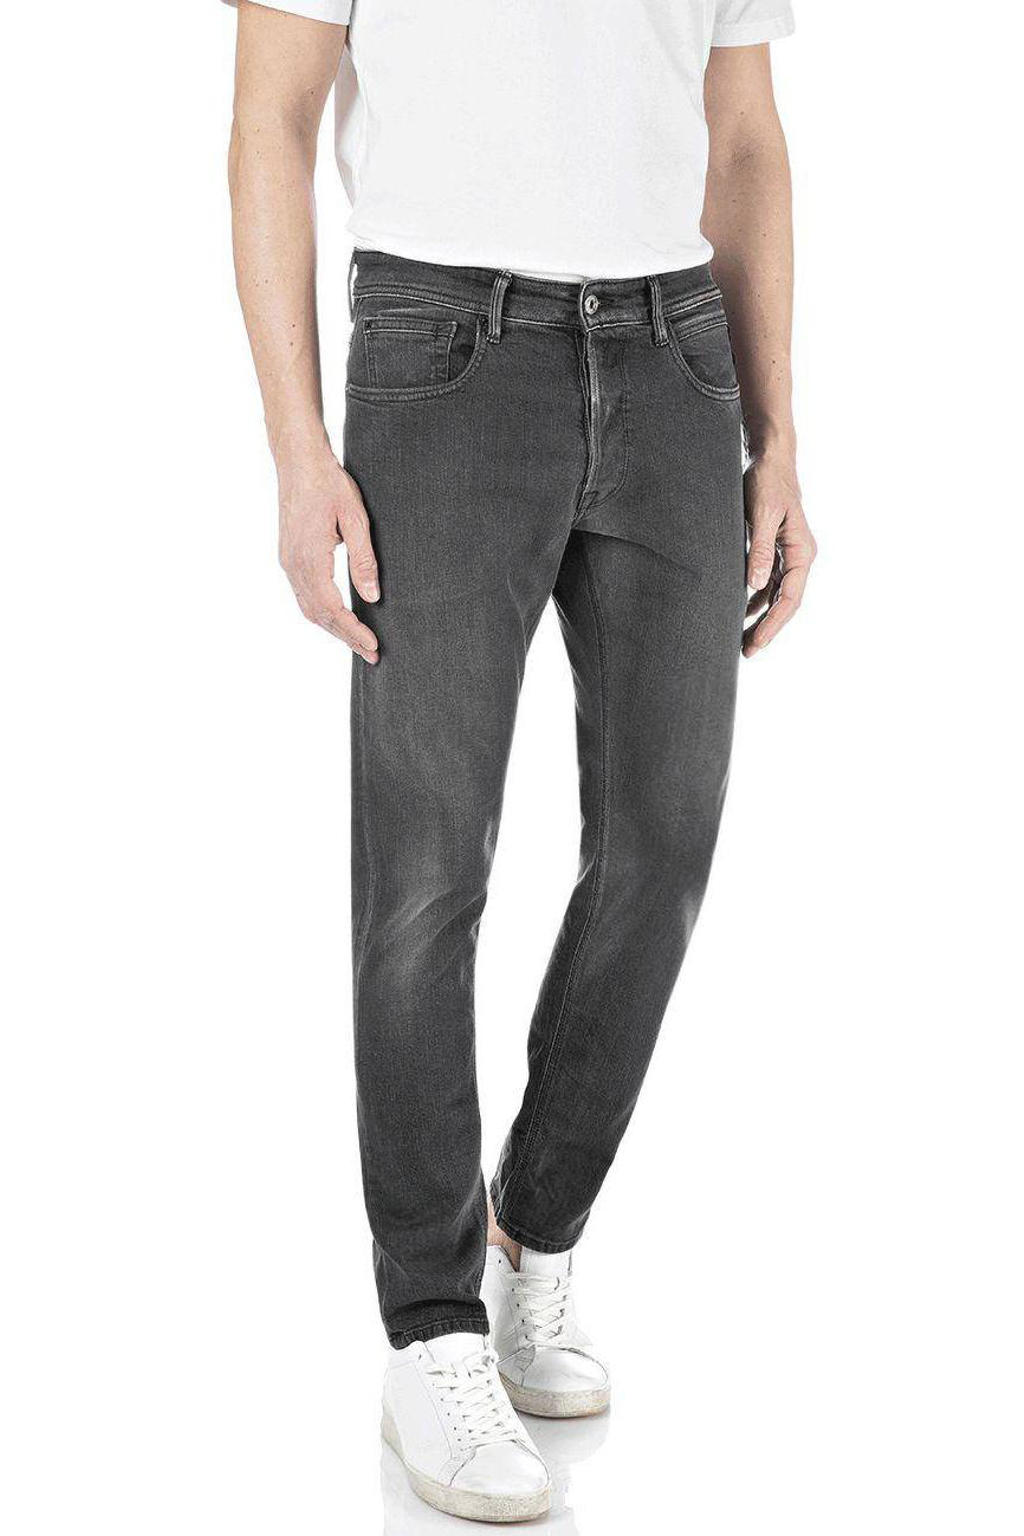 Replay Grey regular slim fit jeans dark grey